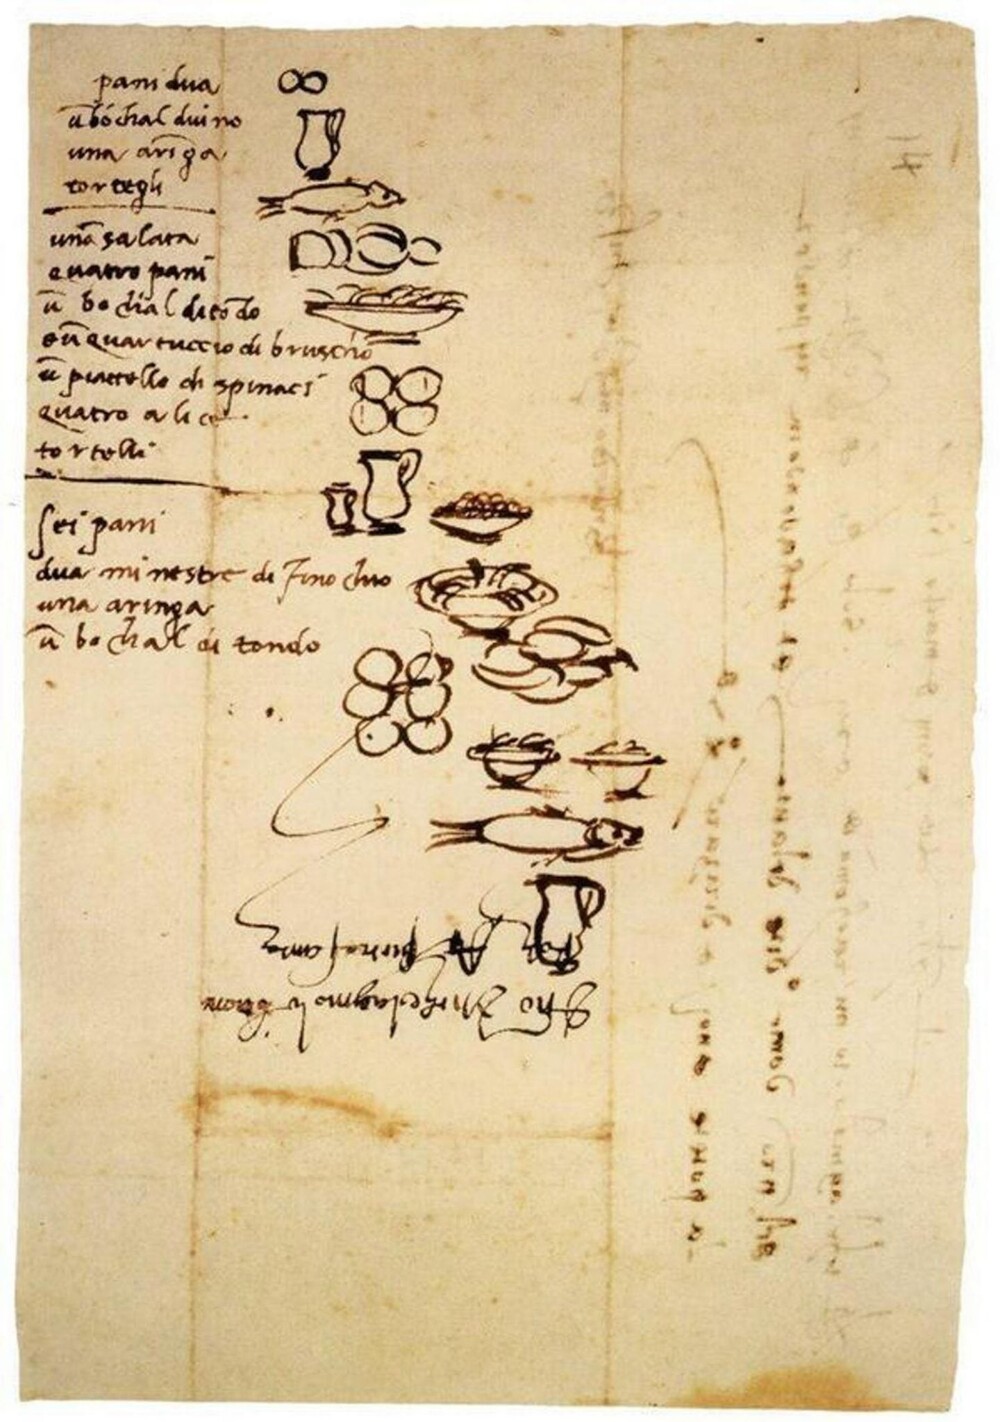 27. Список покупок Микеланджело с рисунками, сделанными самим художником - чтобы его слуги, не умеющие читать, могли всё распознать